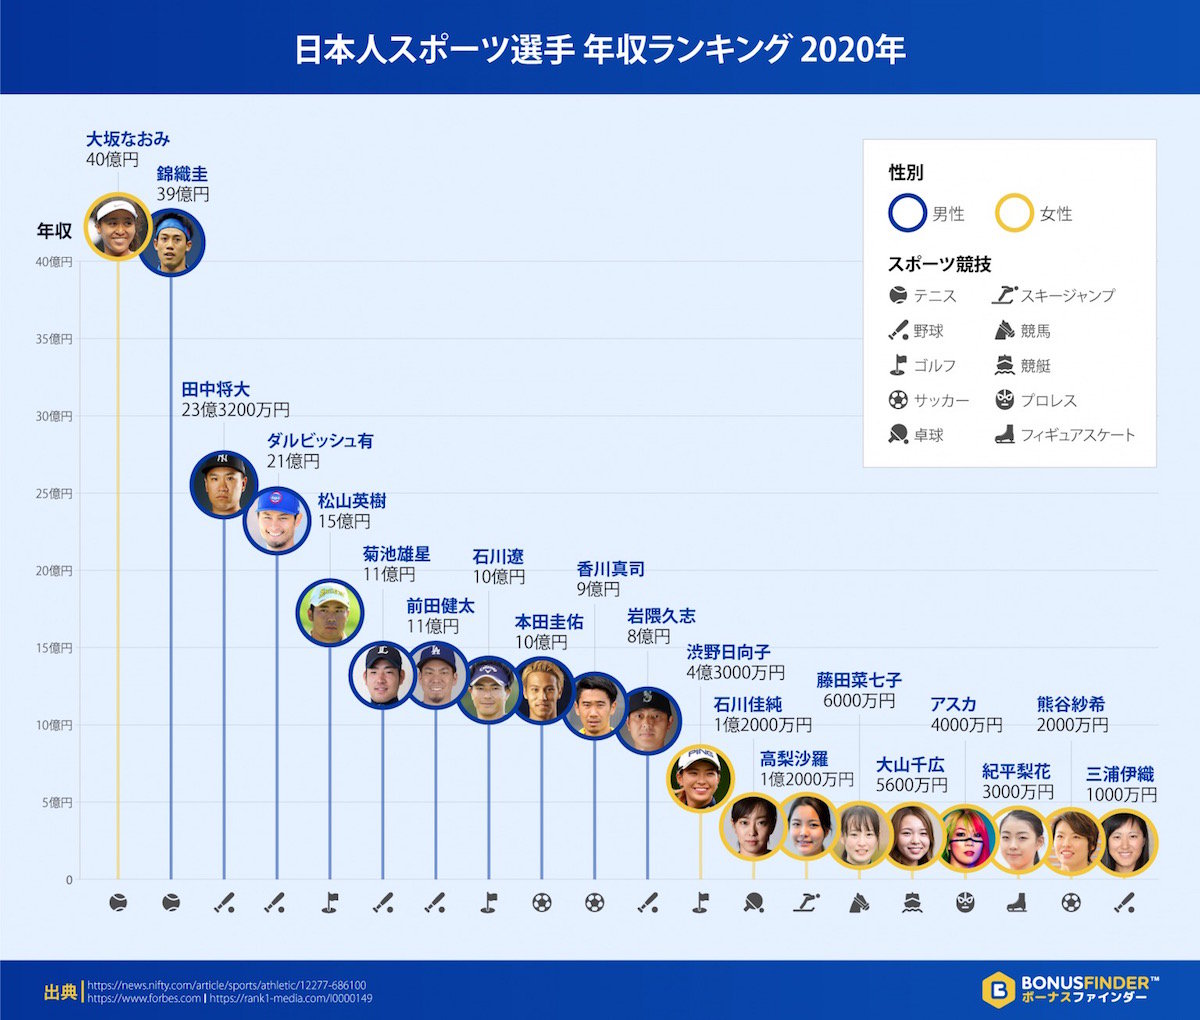 日本人スポーツ選手で1番年収が高いのは 日本人アスリート年収ランキング 年版 公開 ねとらぼ